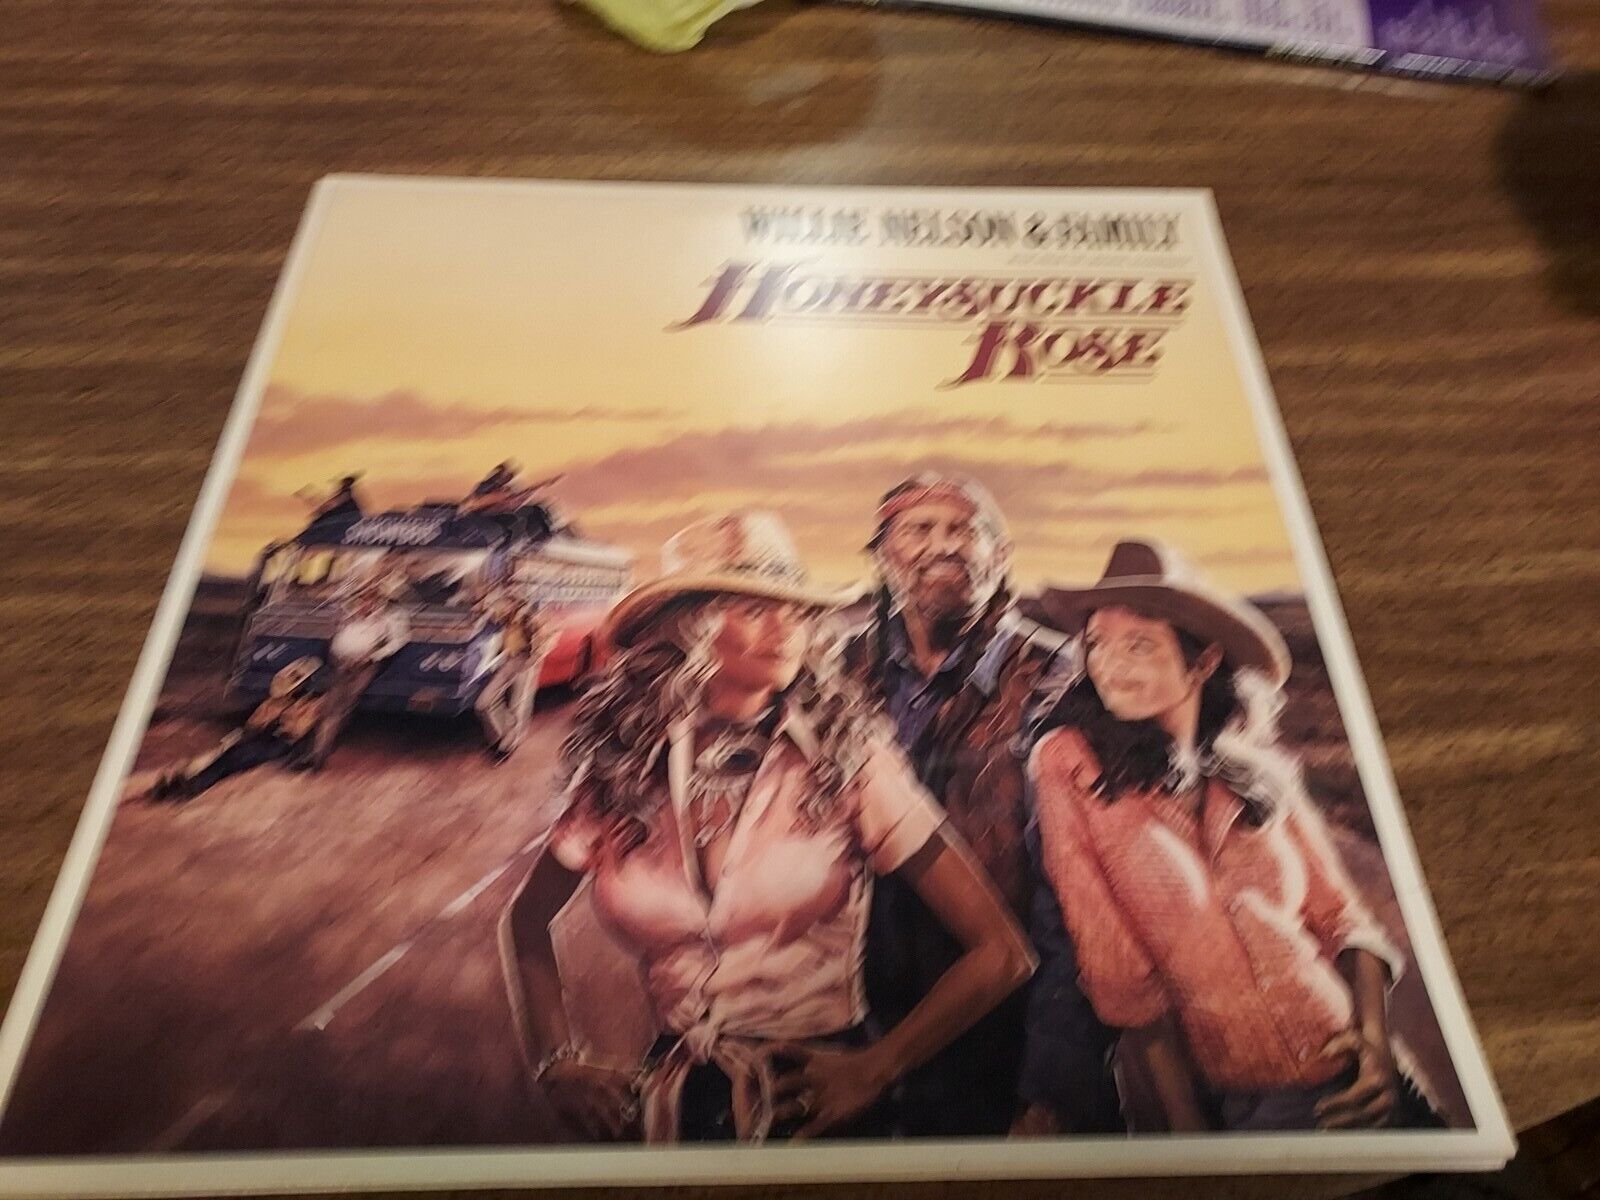 Willie Nelson & Family Honeysuckle Rose 1980 Double Vinyl LP Columbia S2 36752